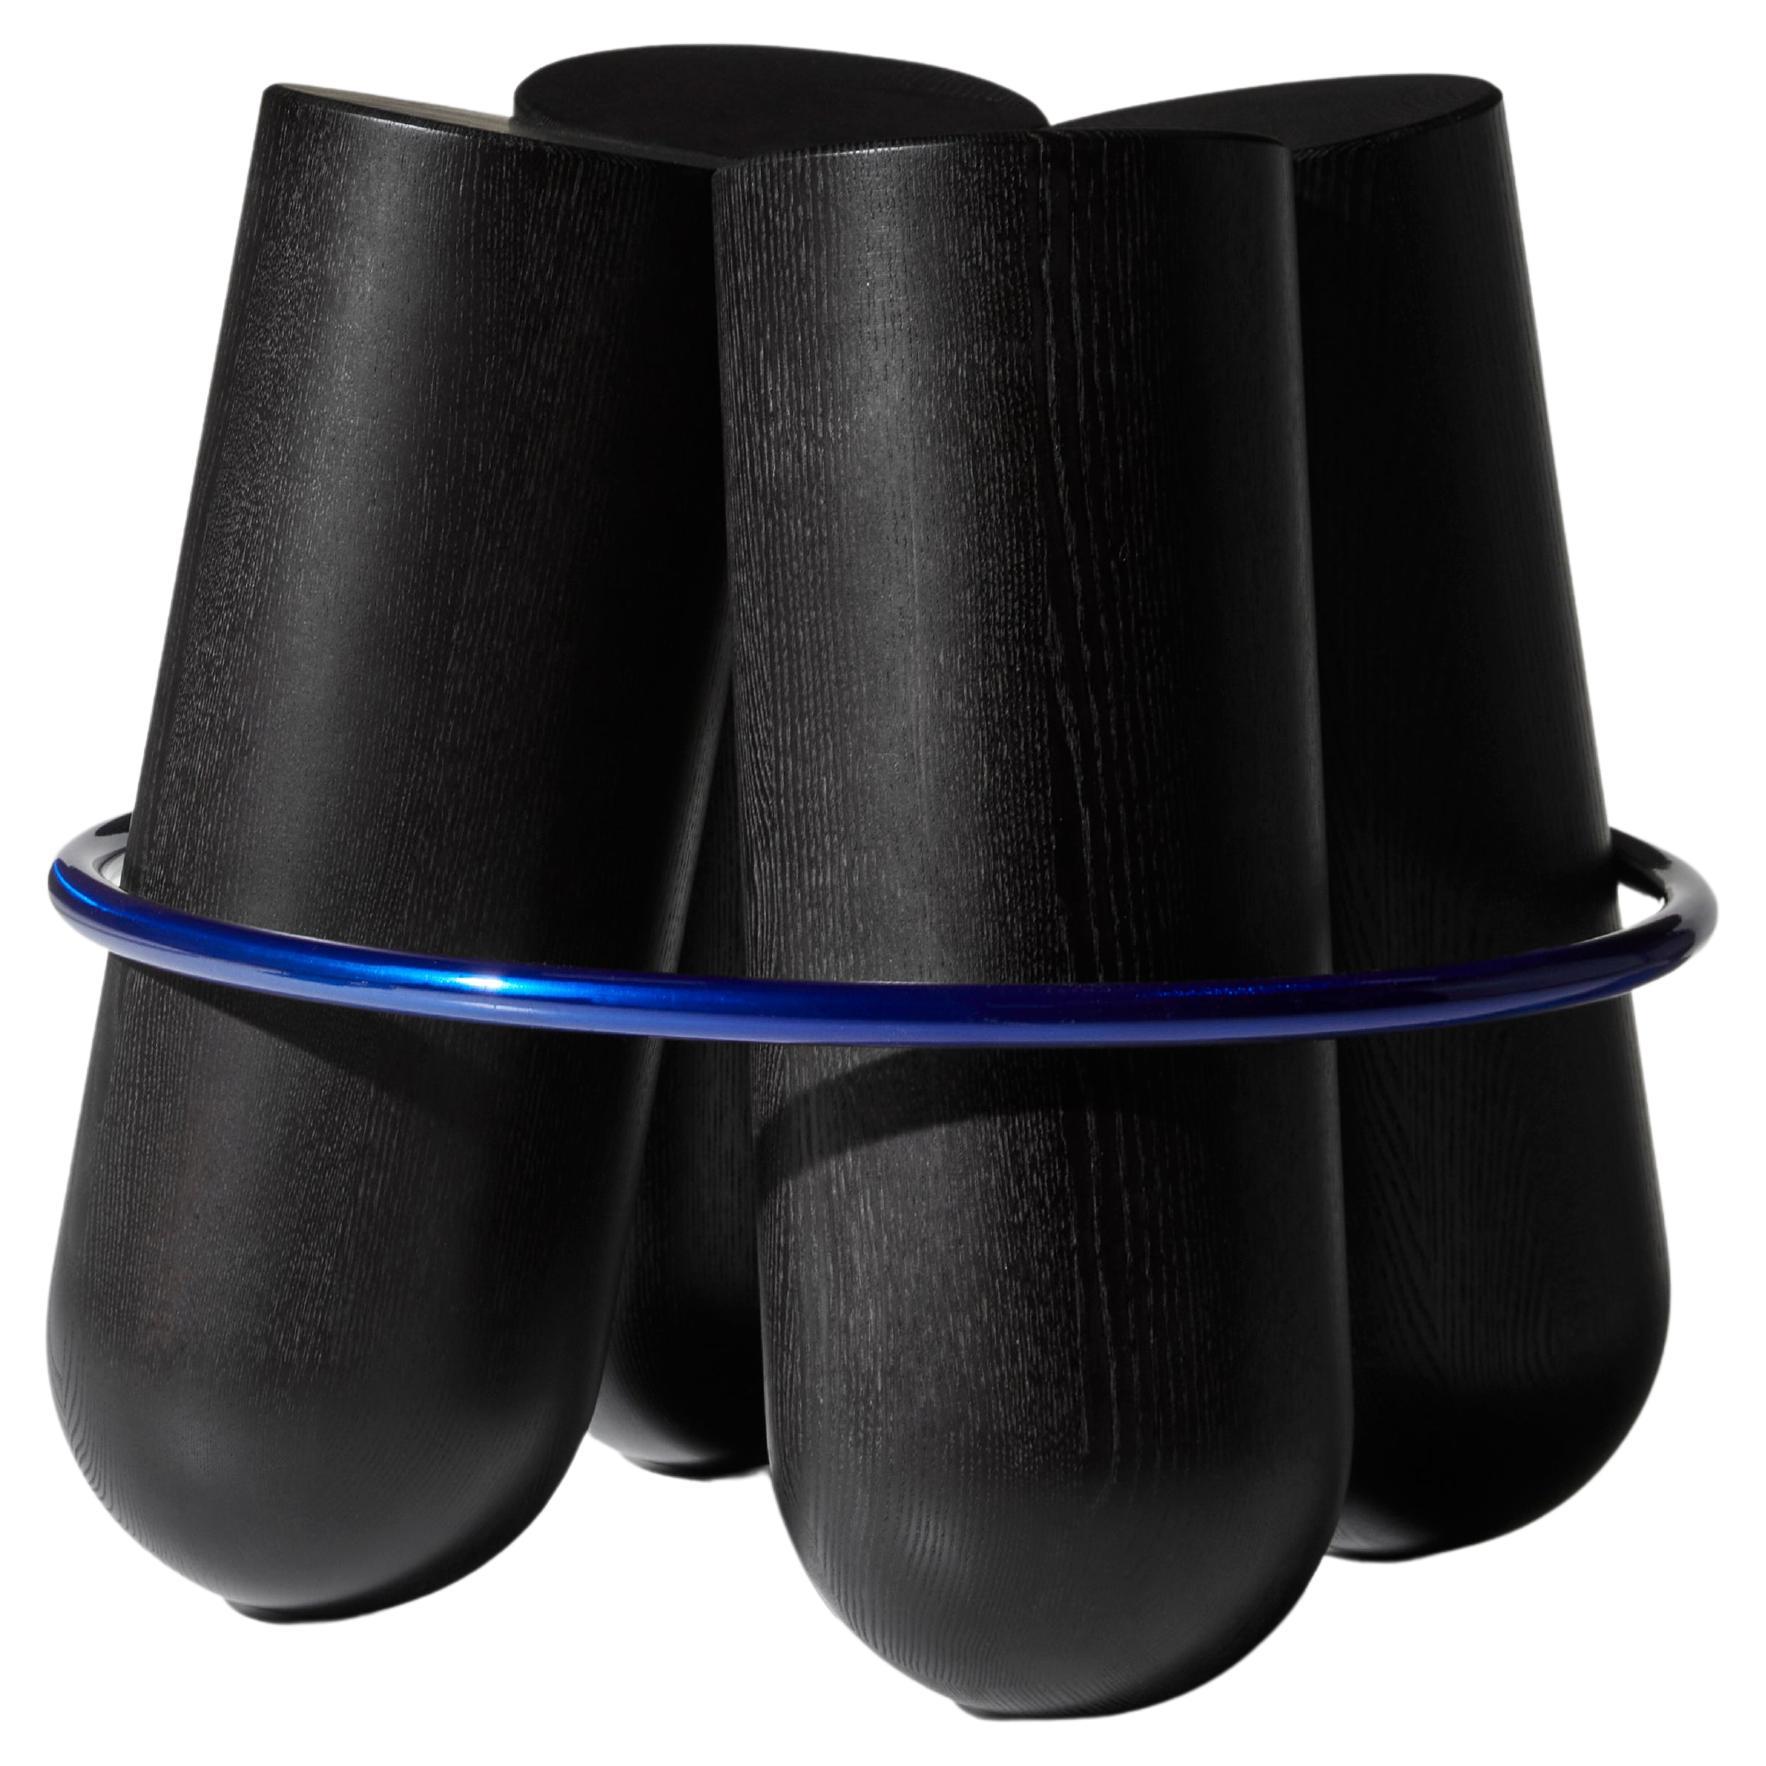 Tabouret Bolt, bague noire et bleu lazer, par Note Design Studio pour La Chance